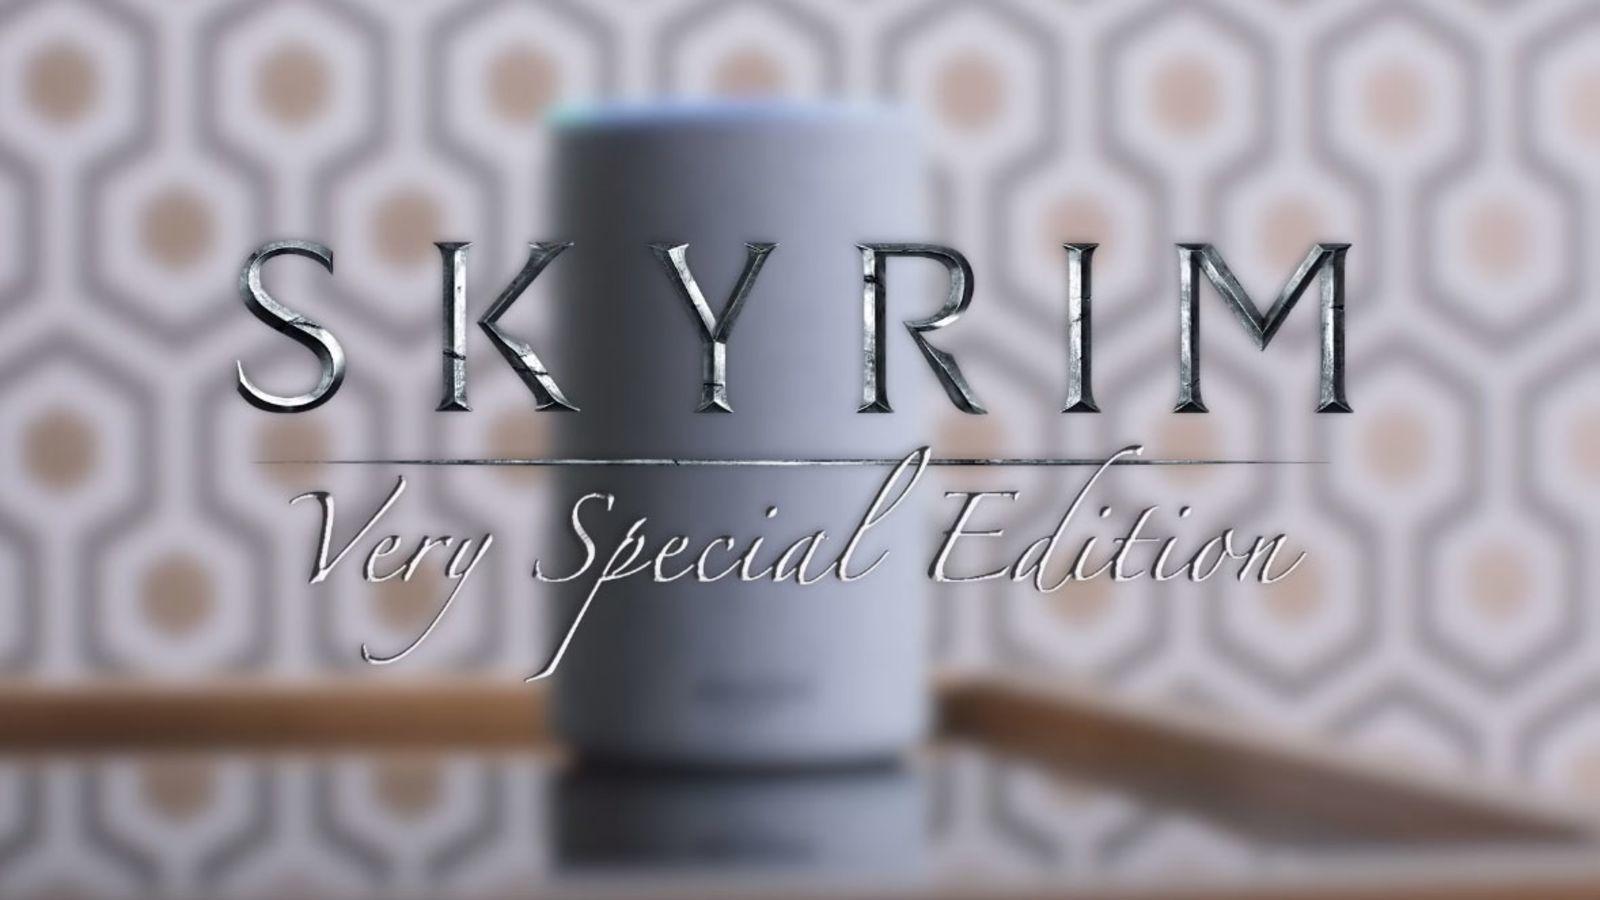 Skyrim: Very Special Edition var ingen spøk